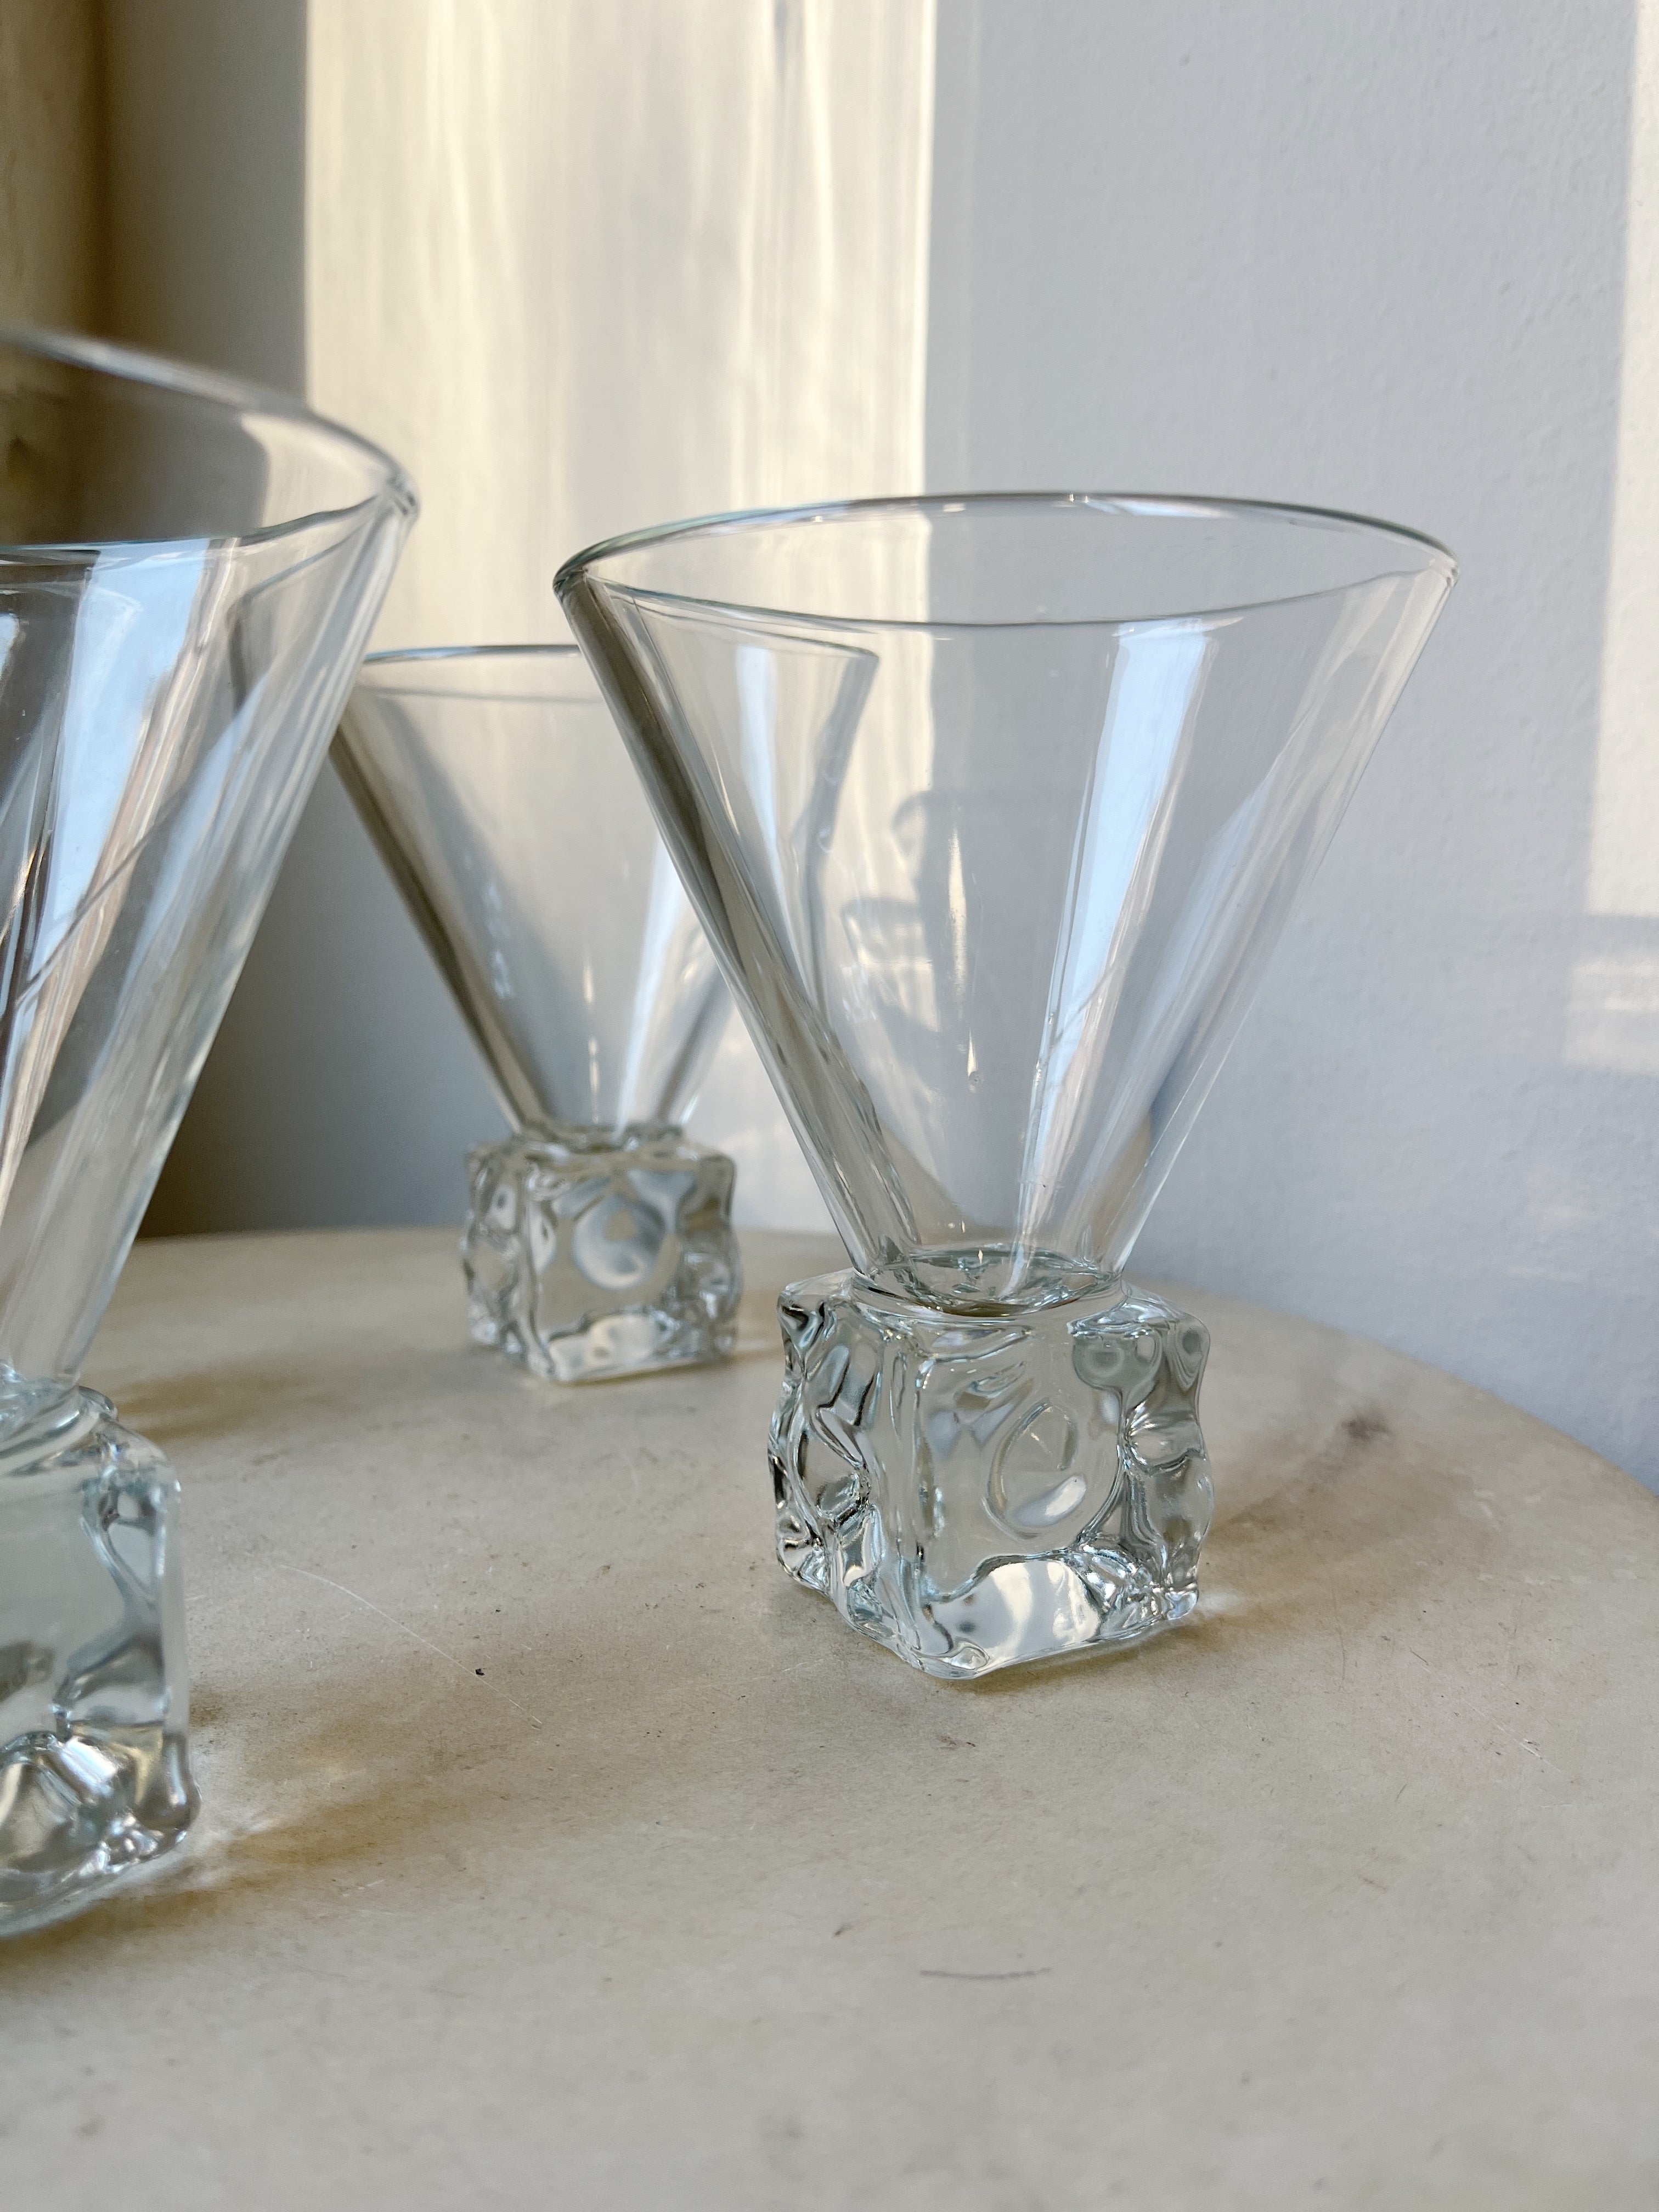 VINTAGE COCKTAIL GLASSES